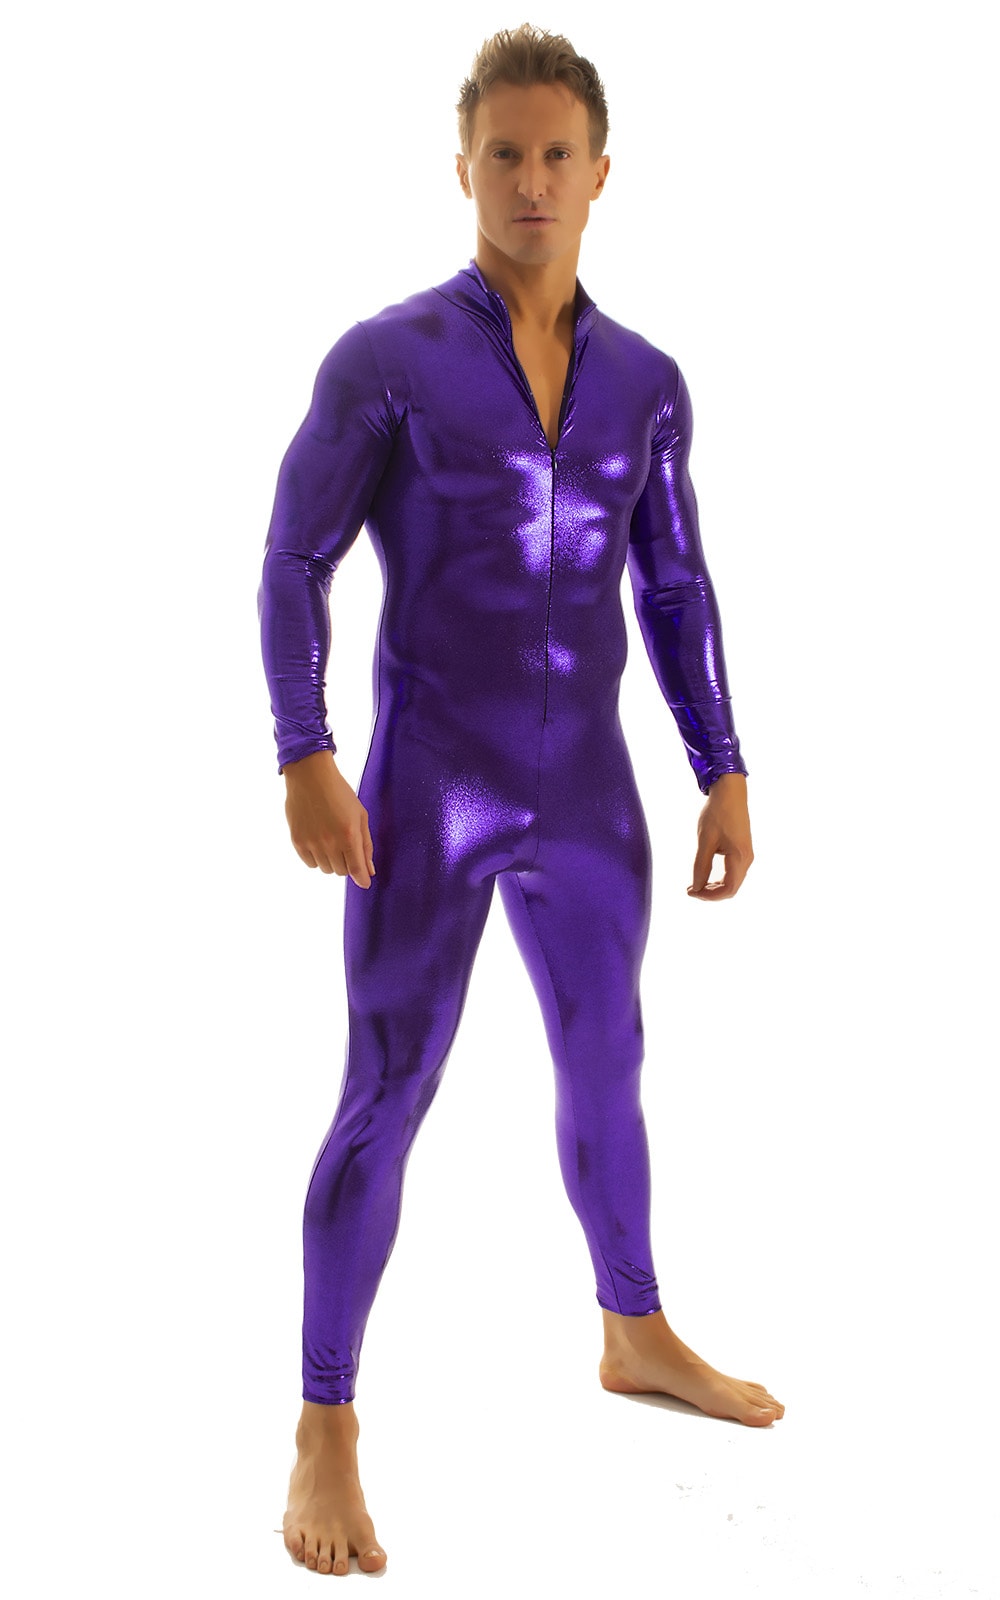 Full Bodysuit Zentai Lycra Spandex Suit for men in Mystique Eggplant Purple 3